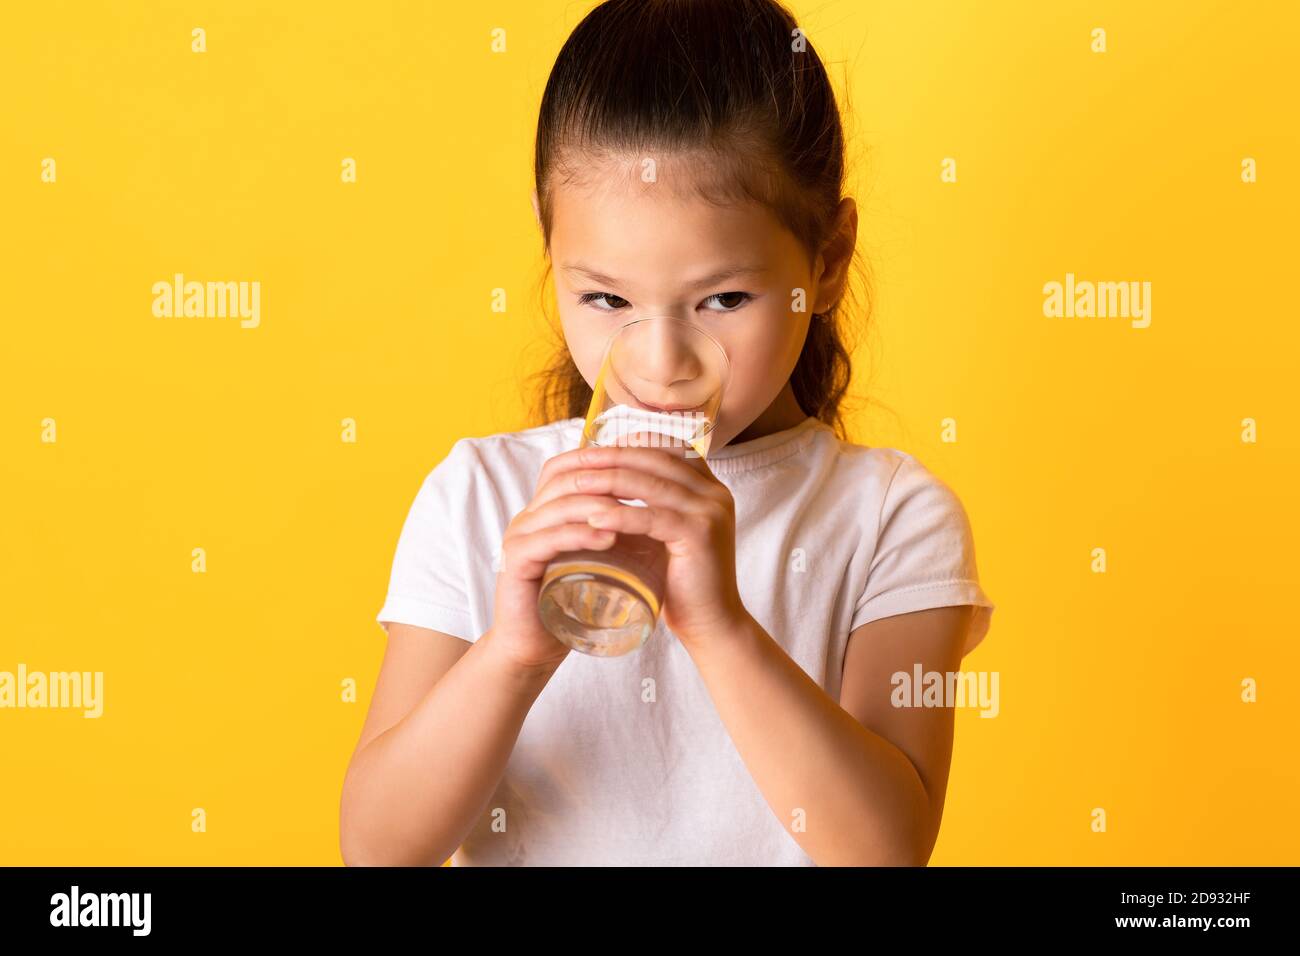 Portrait d'un enfant asiatique qui boit de l'eau de source Banque D'Images